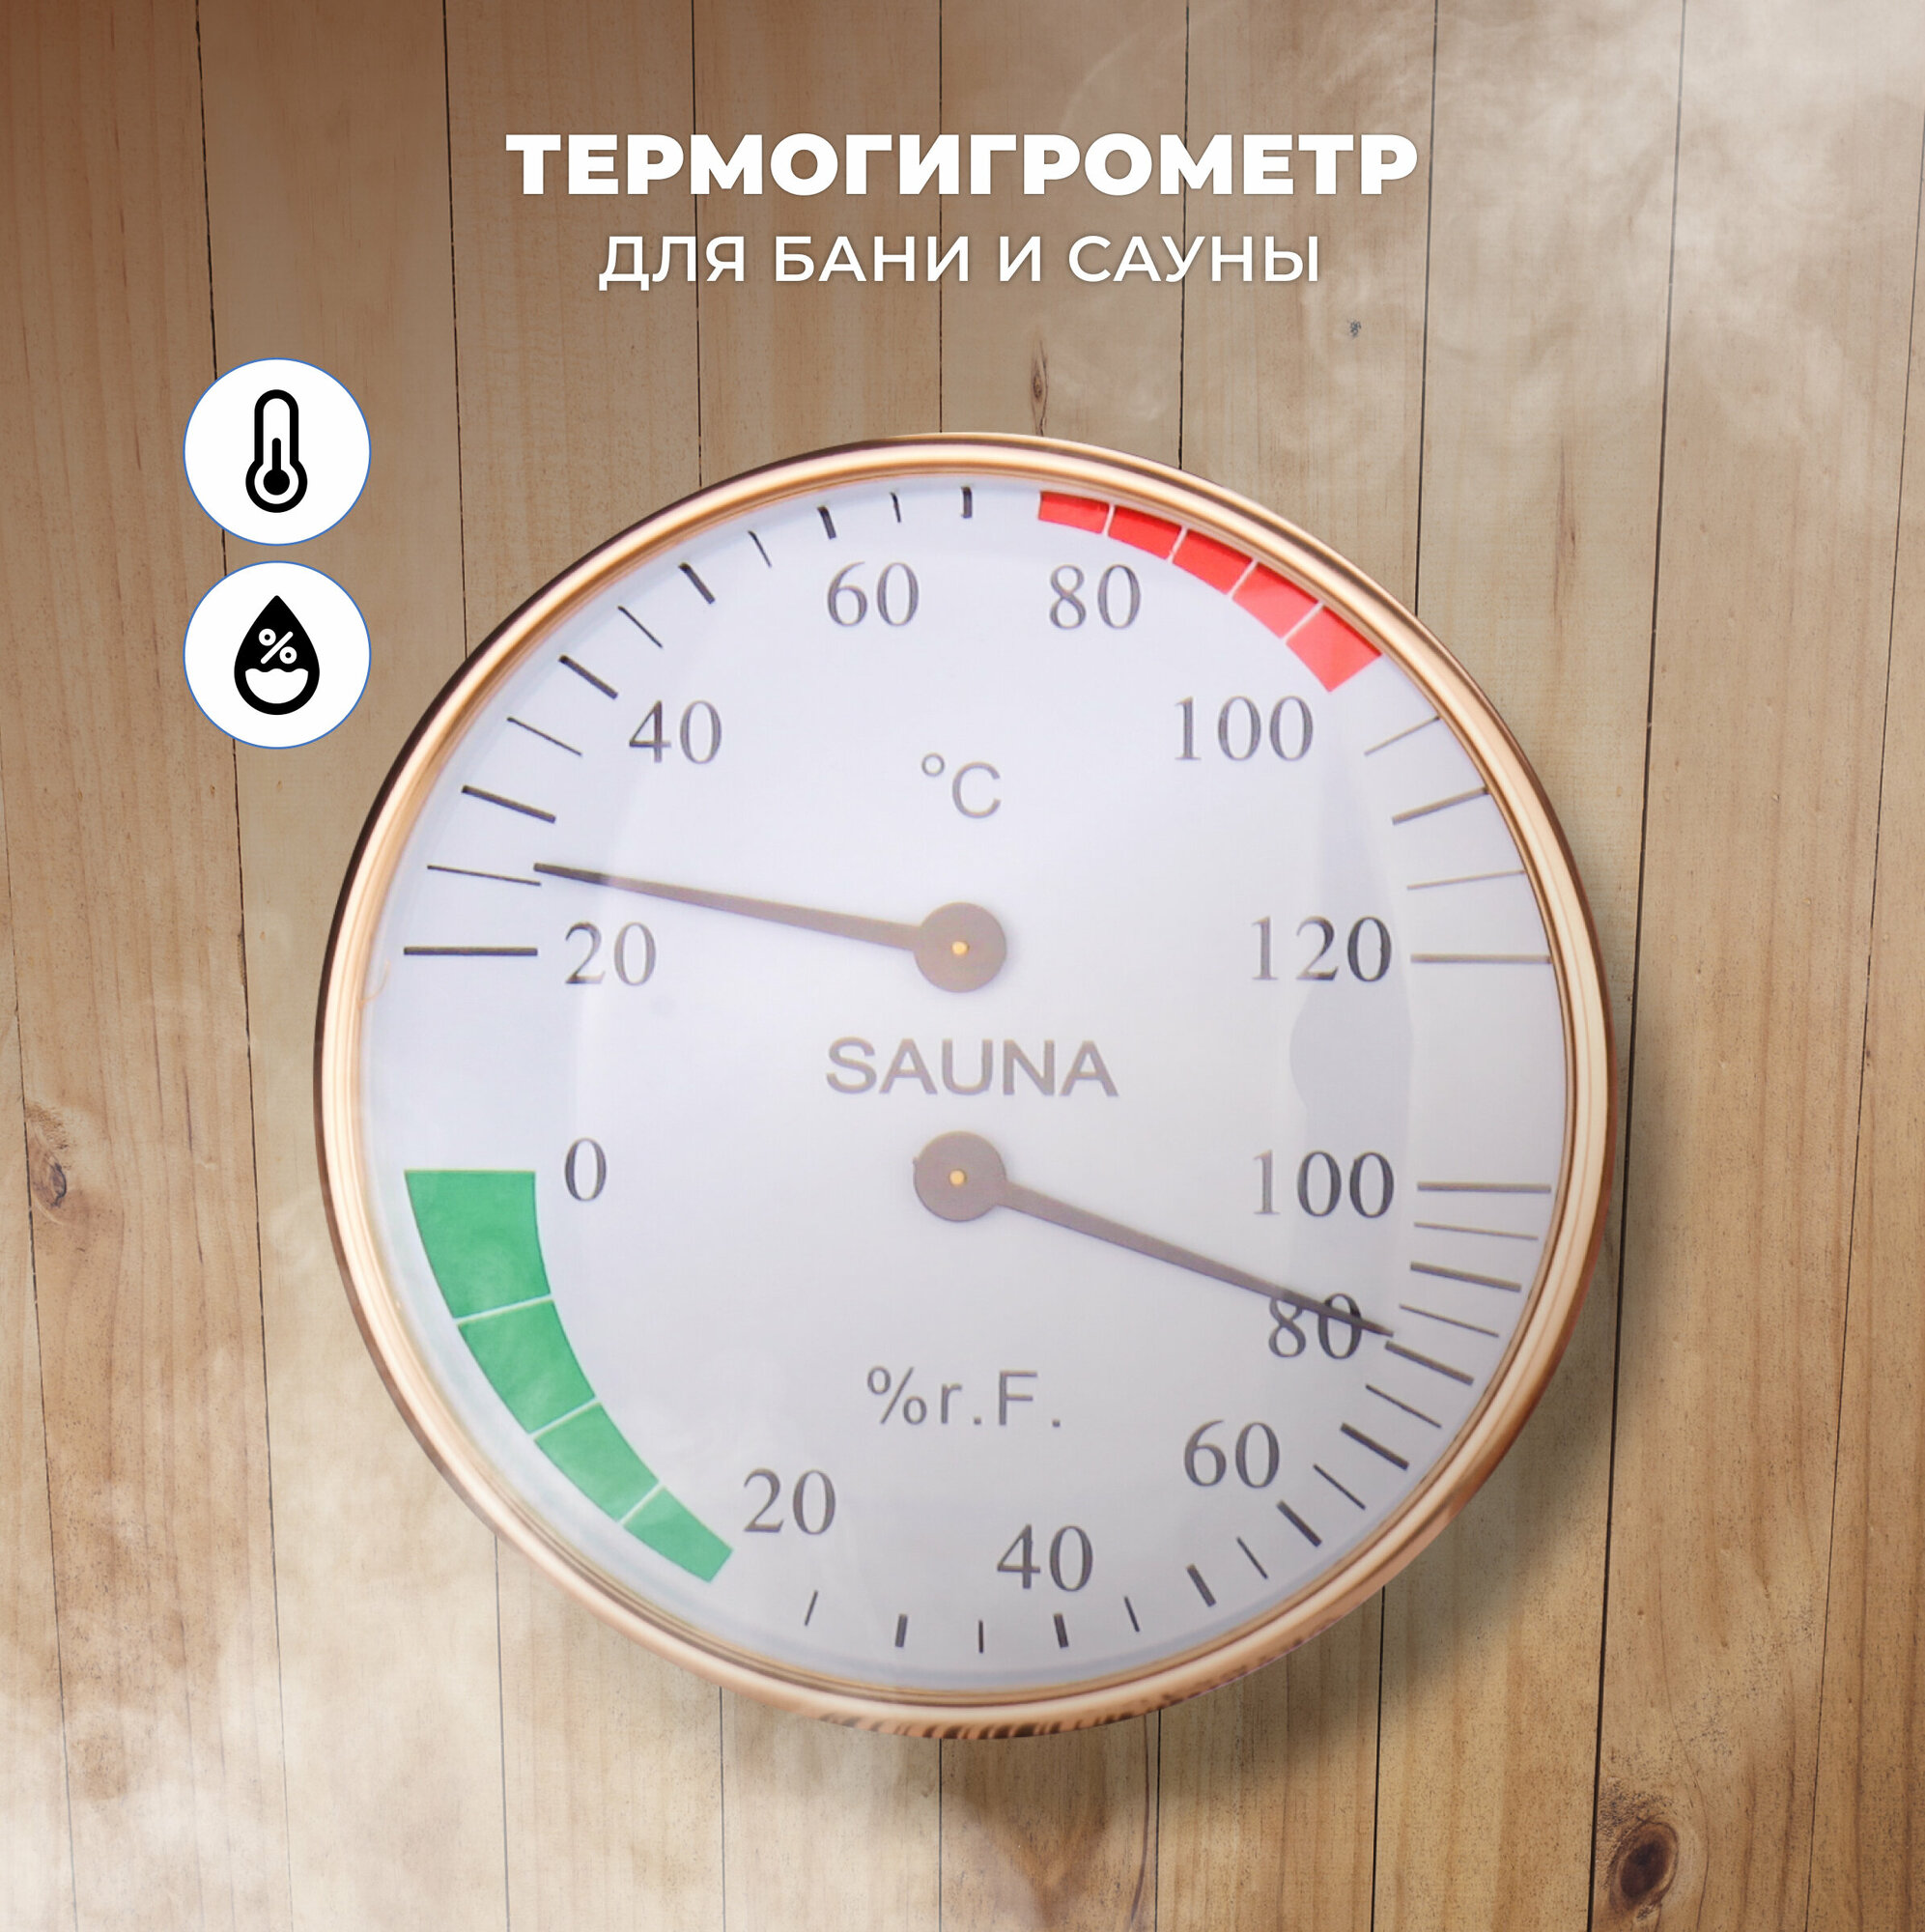 Термогигрометр для бани и сауны R-SAUNA